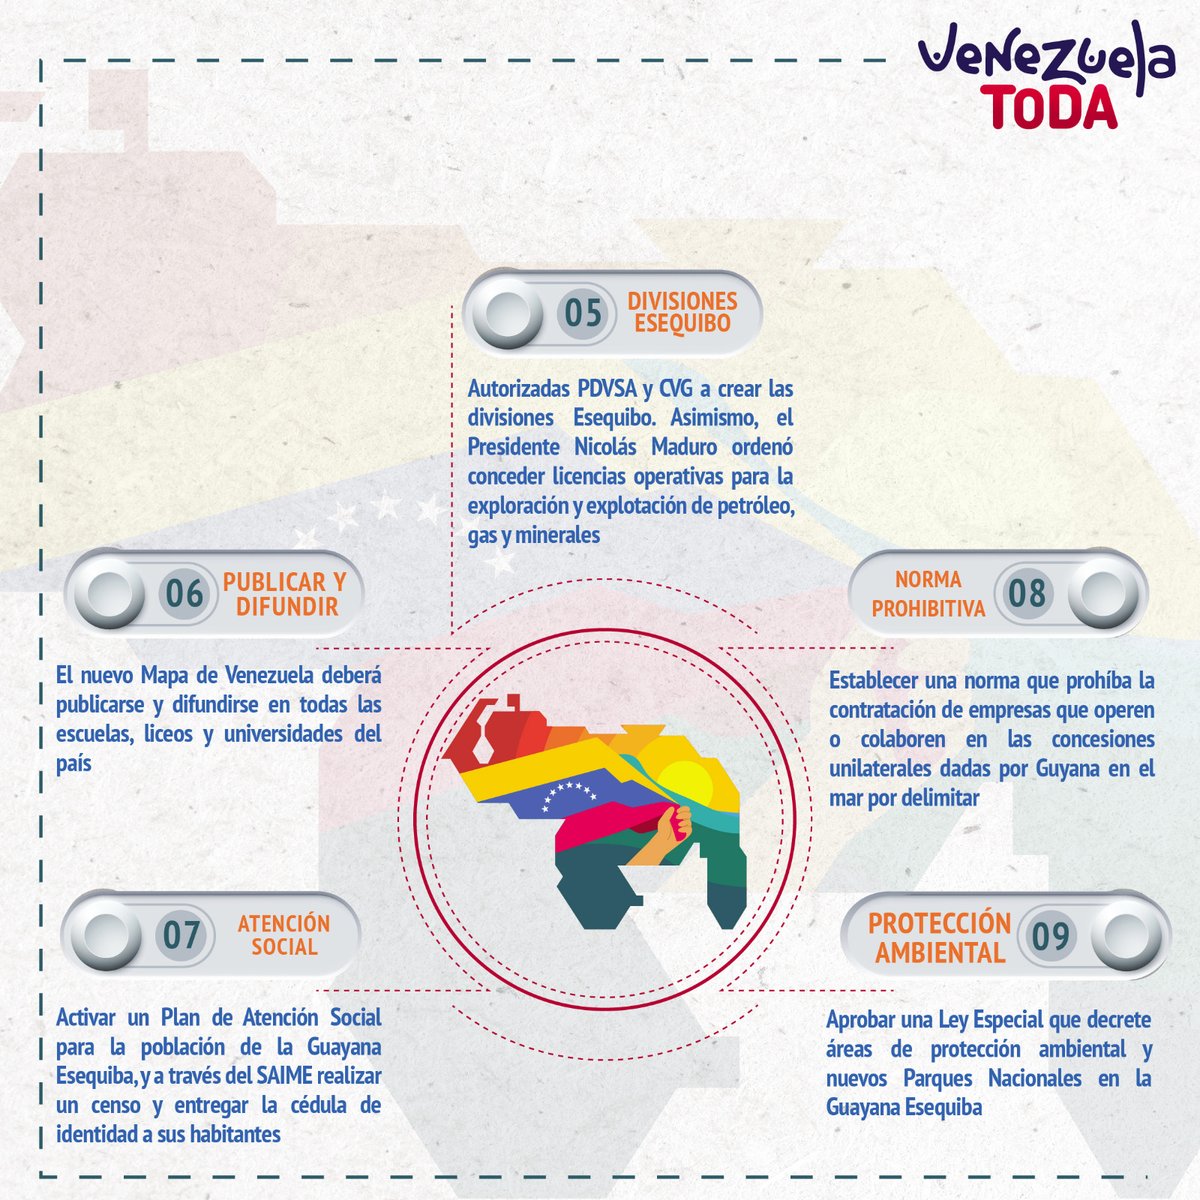 #01Ene || Conoce las  Acciones Estratégicas que está llevando a cabo el Gobierno Nacional para la defensa de los derechos históricos de Venezuela sobre la Guayana Esequiba.
-